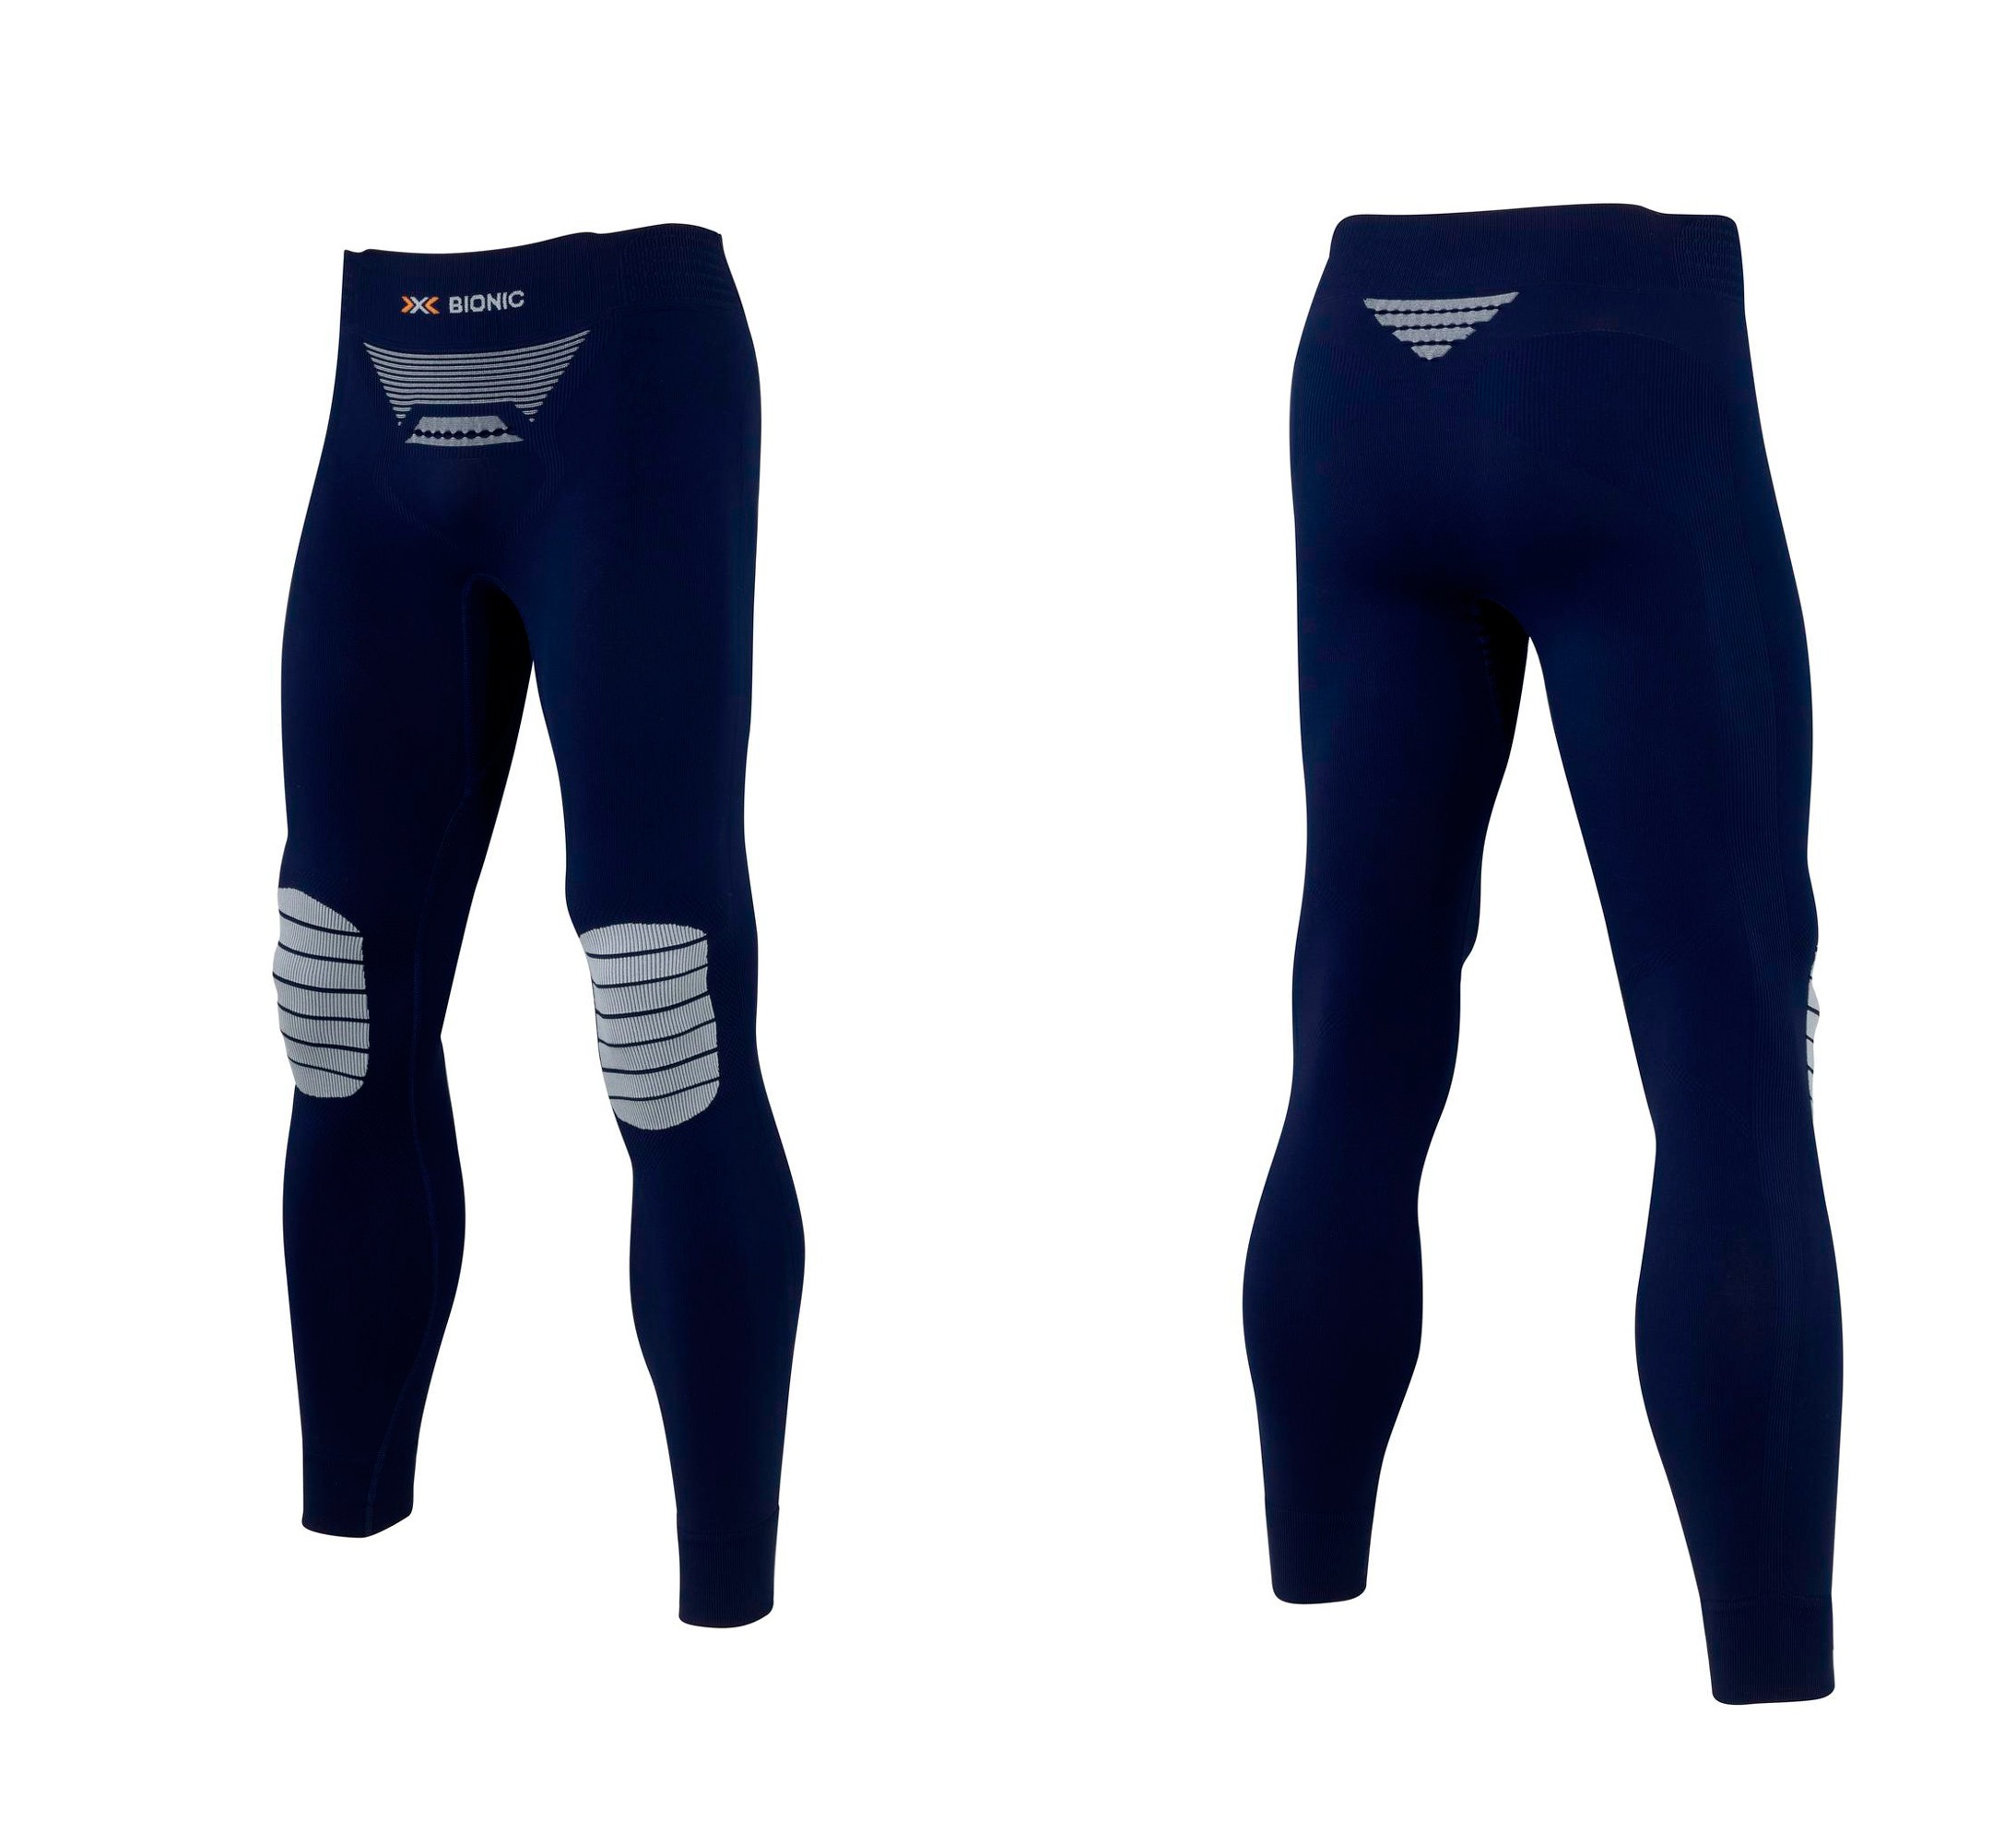 Белье: термокальсоны мужские Pants Long Energ X-BIONIC для занятий спортом